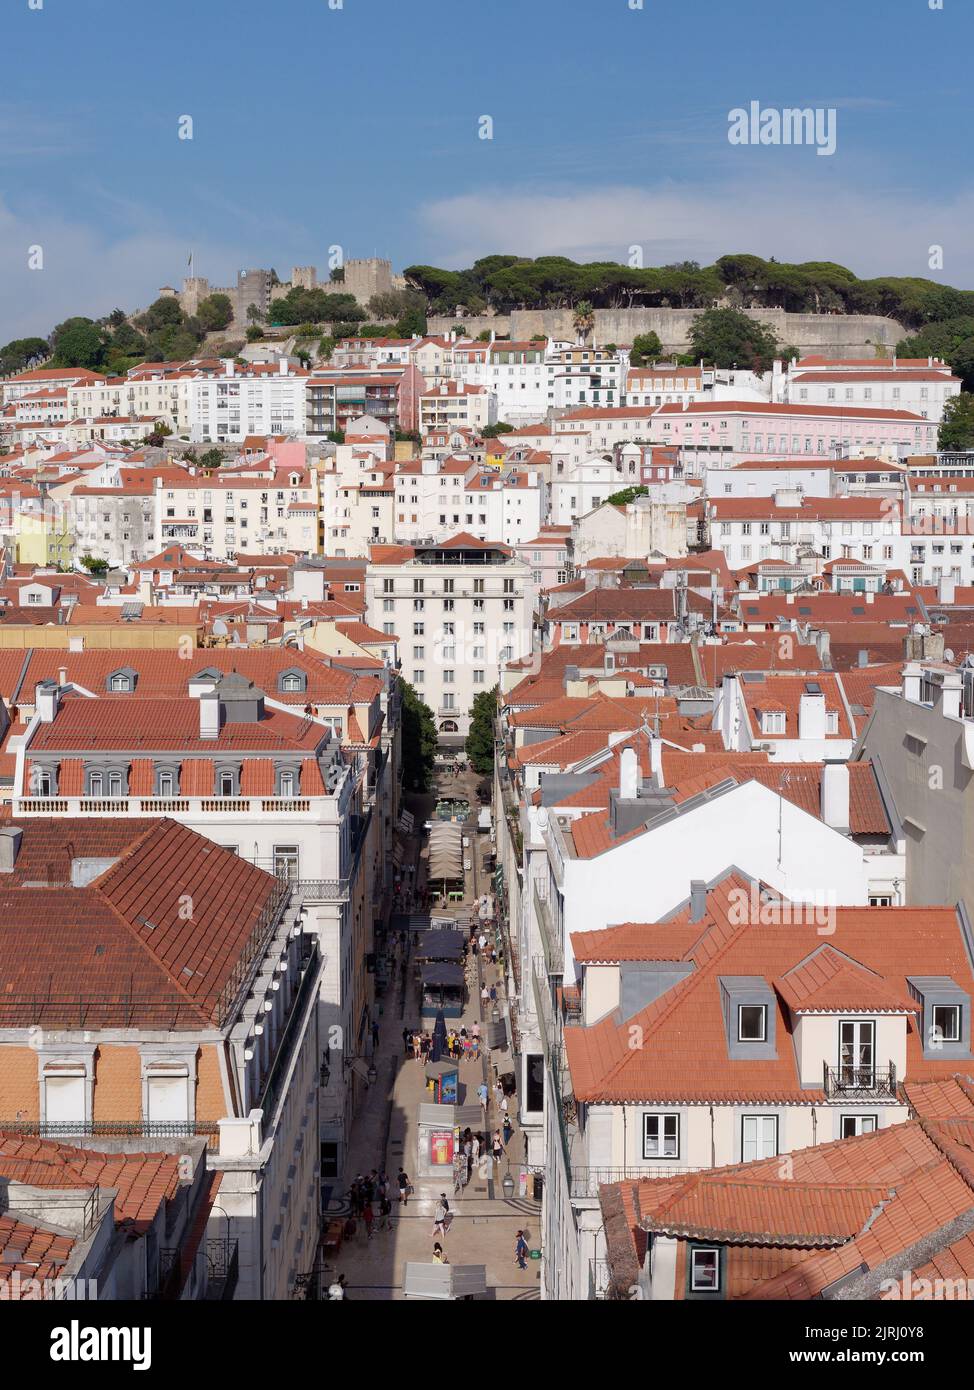 Lissabon hat ein erhöhtes Stadtbild mit der Burg St. George im Hintergrund, wie man sie vom berühmten Santa Justa Lift aus sieht. Portugal. Stockfoto